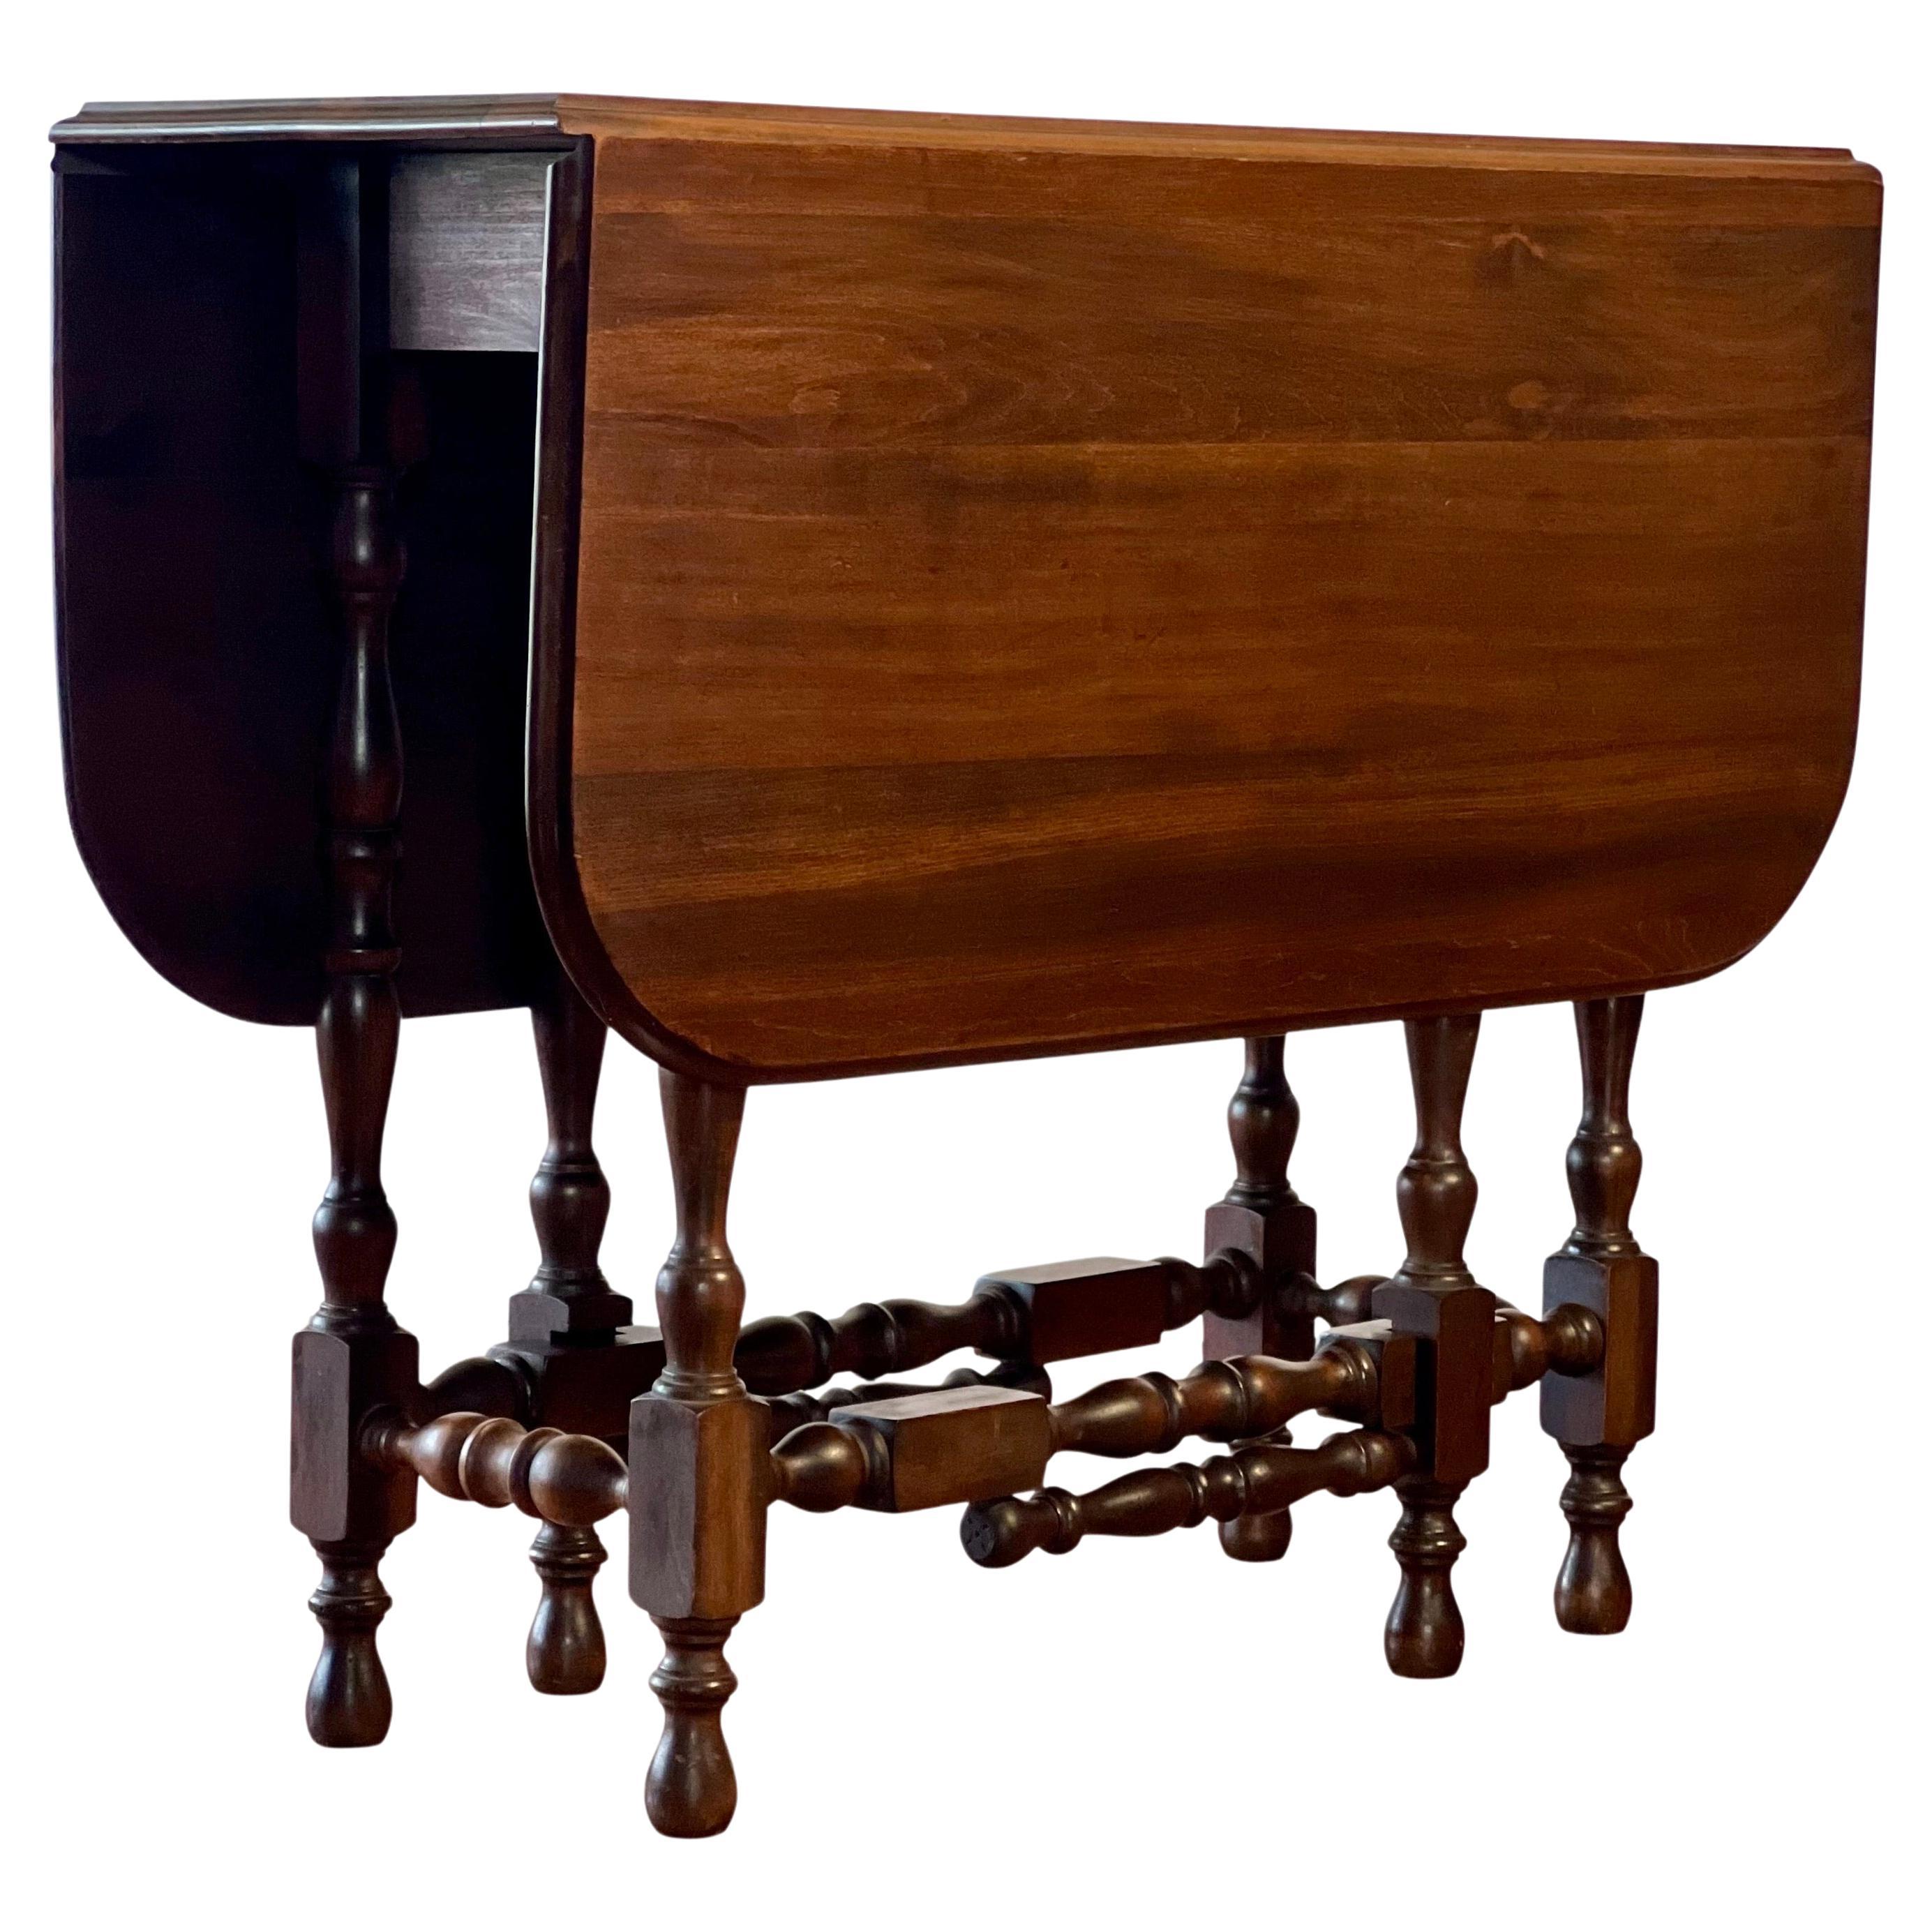 Table à pied en châtaignier de style William & Mary du début du XXe siècle